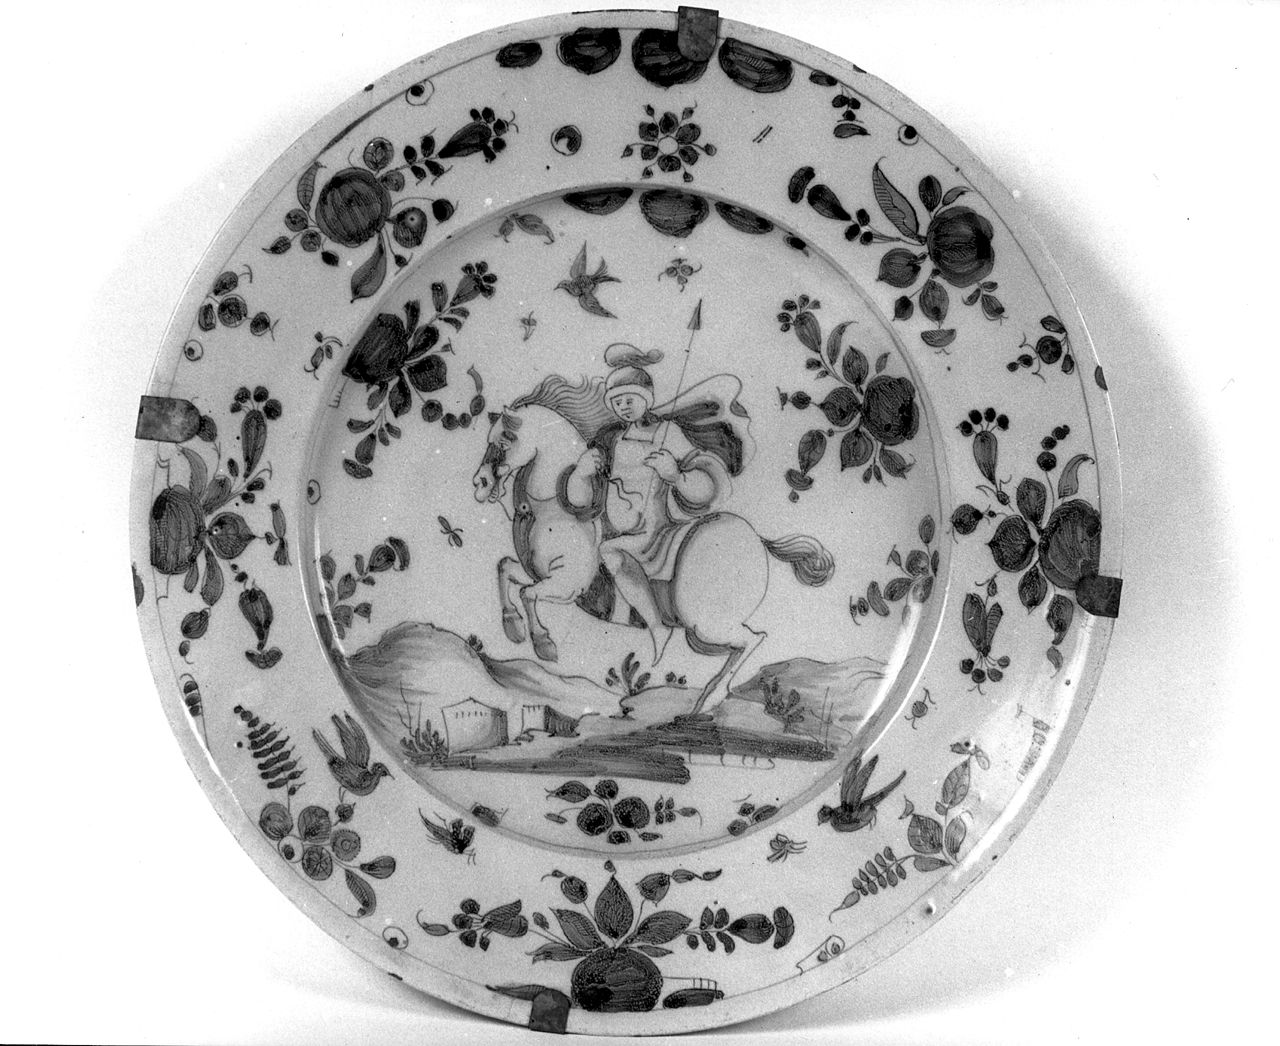 cavaliere a cavallo, motivi decorativi vegetali e floreali con uccelli (piatto da parata) - manifattura ligure (secc. XVII/ XVIII)